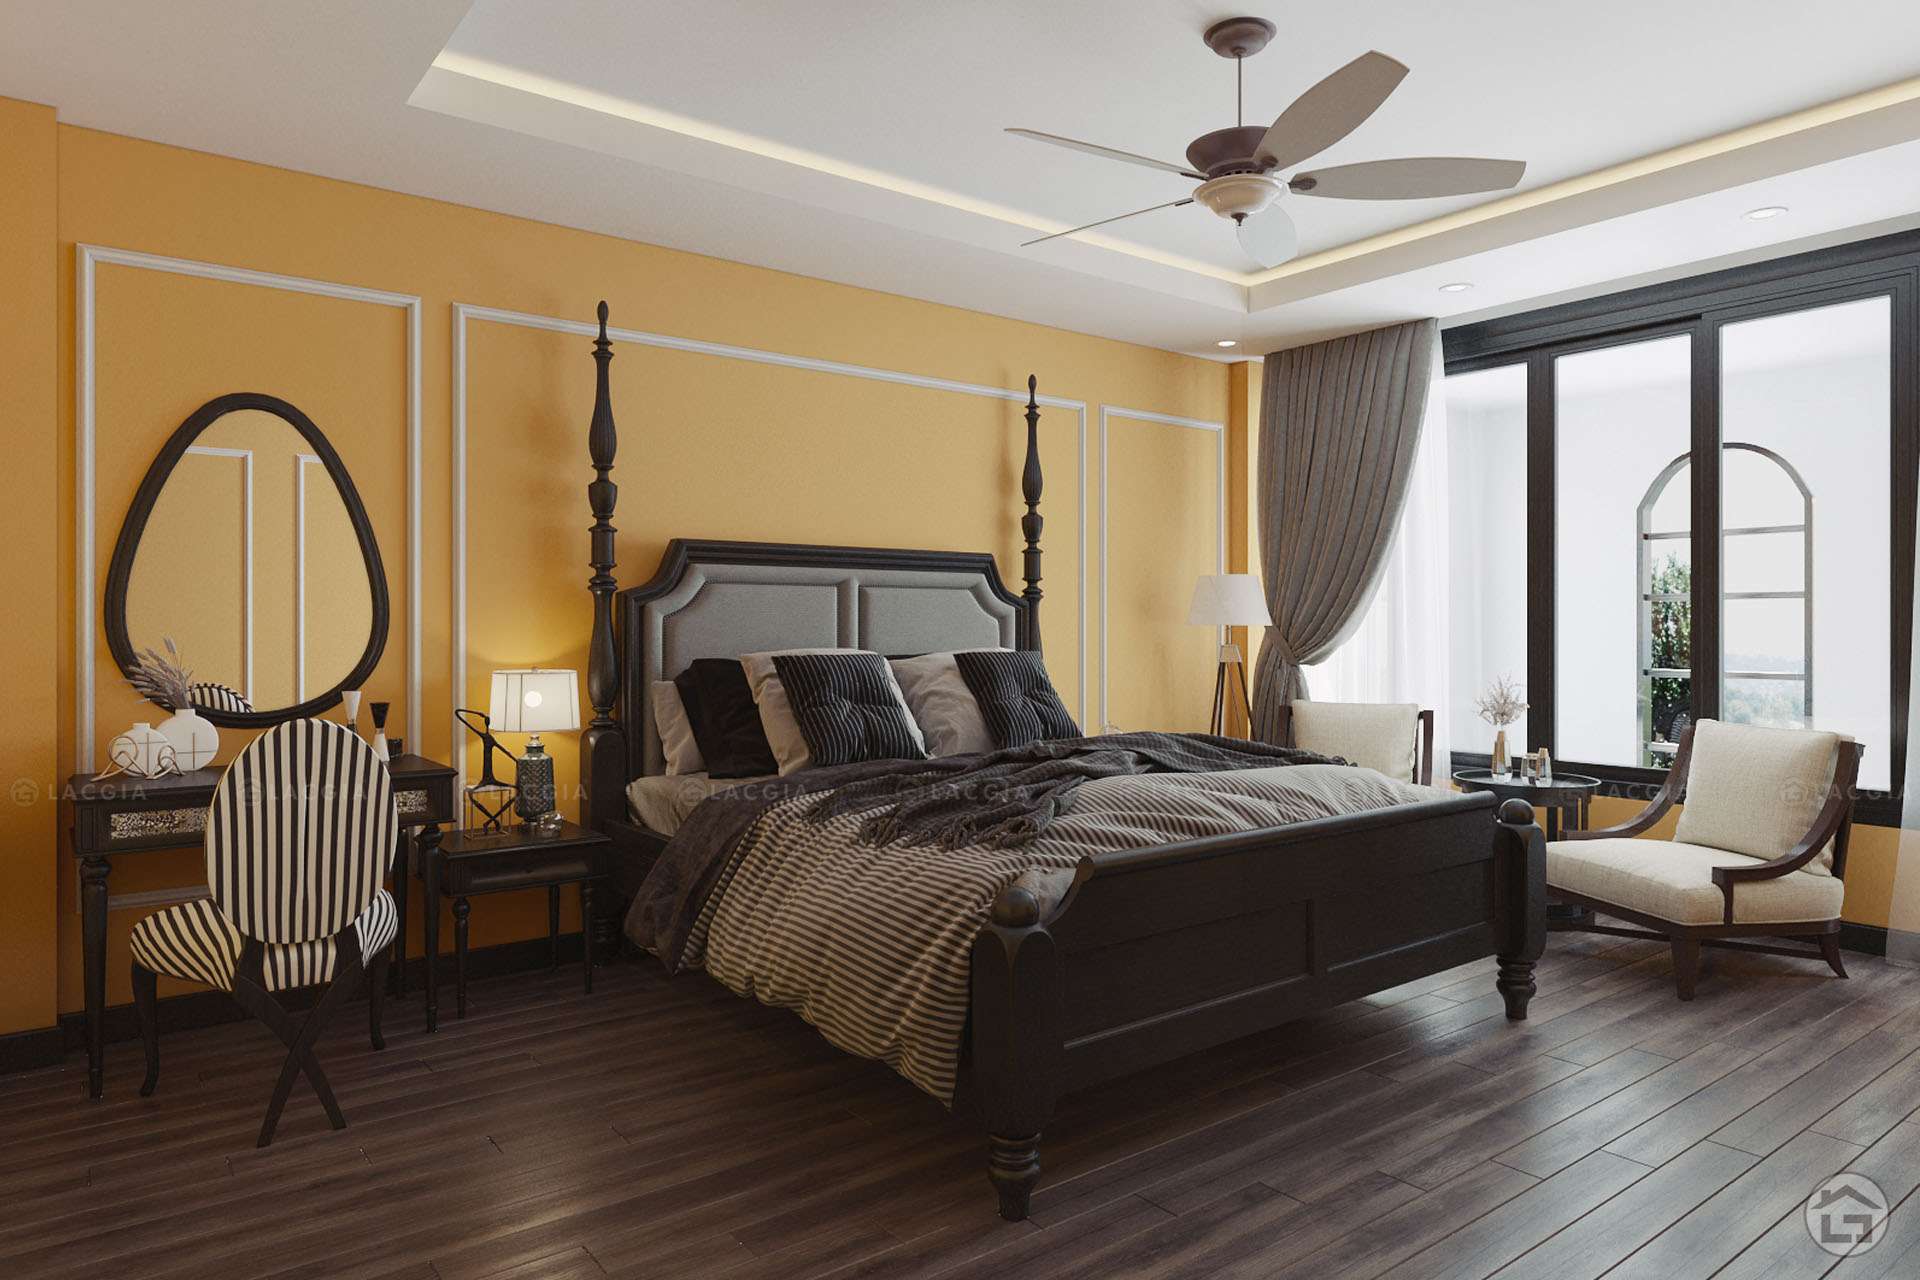 Mẫu phòng ngủ Master thiết kế theo phong cách Đông Dương (Indochine)